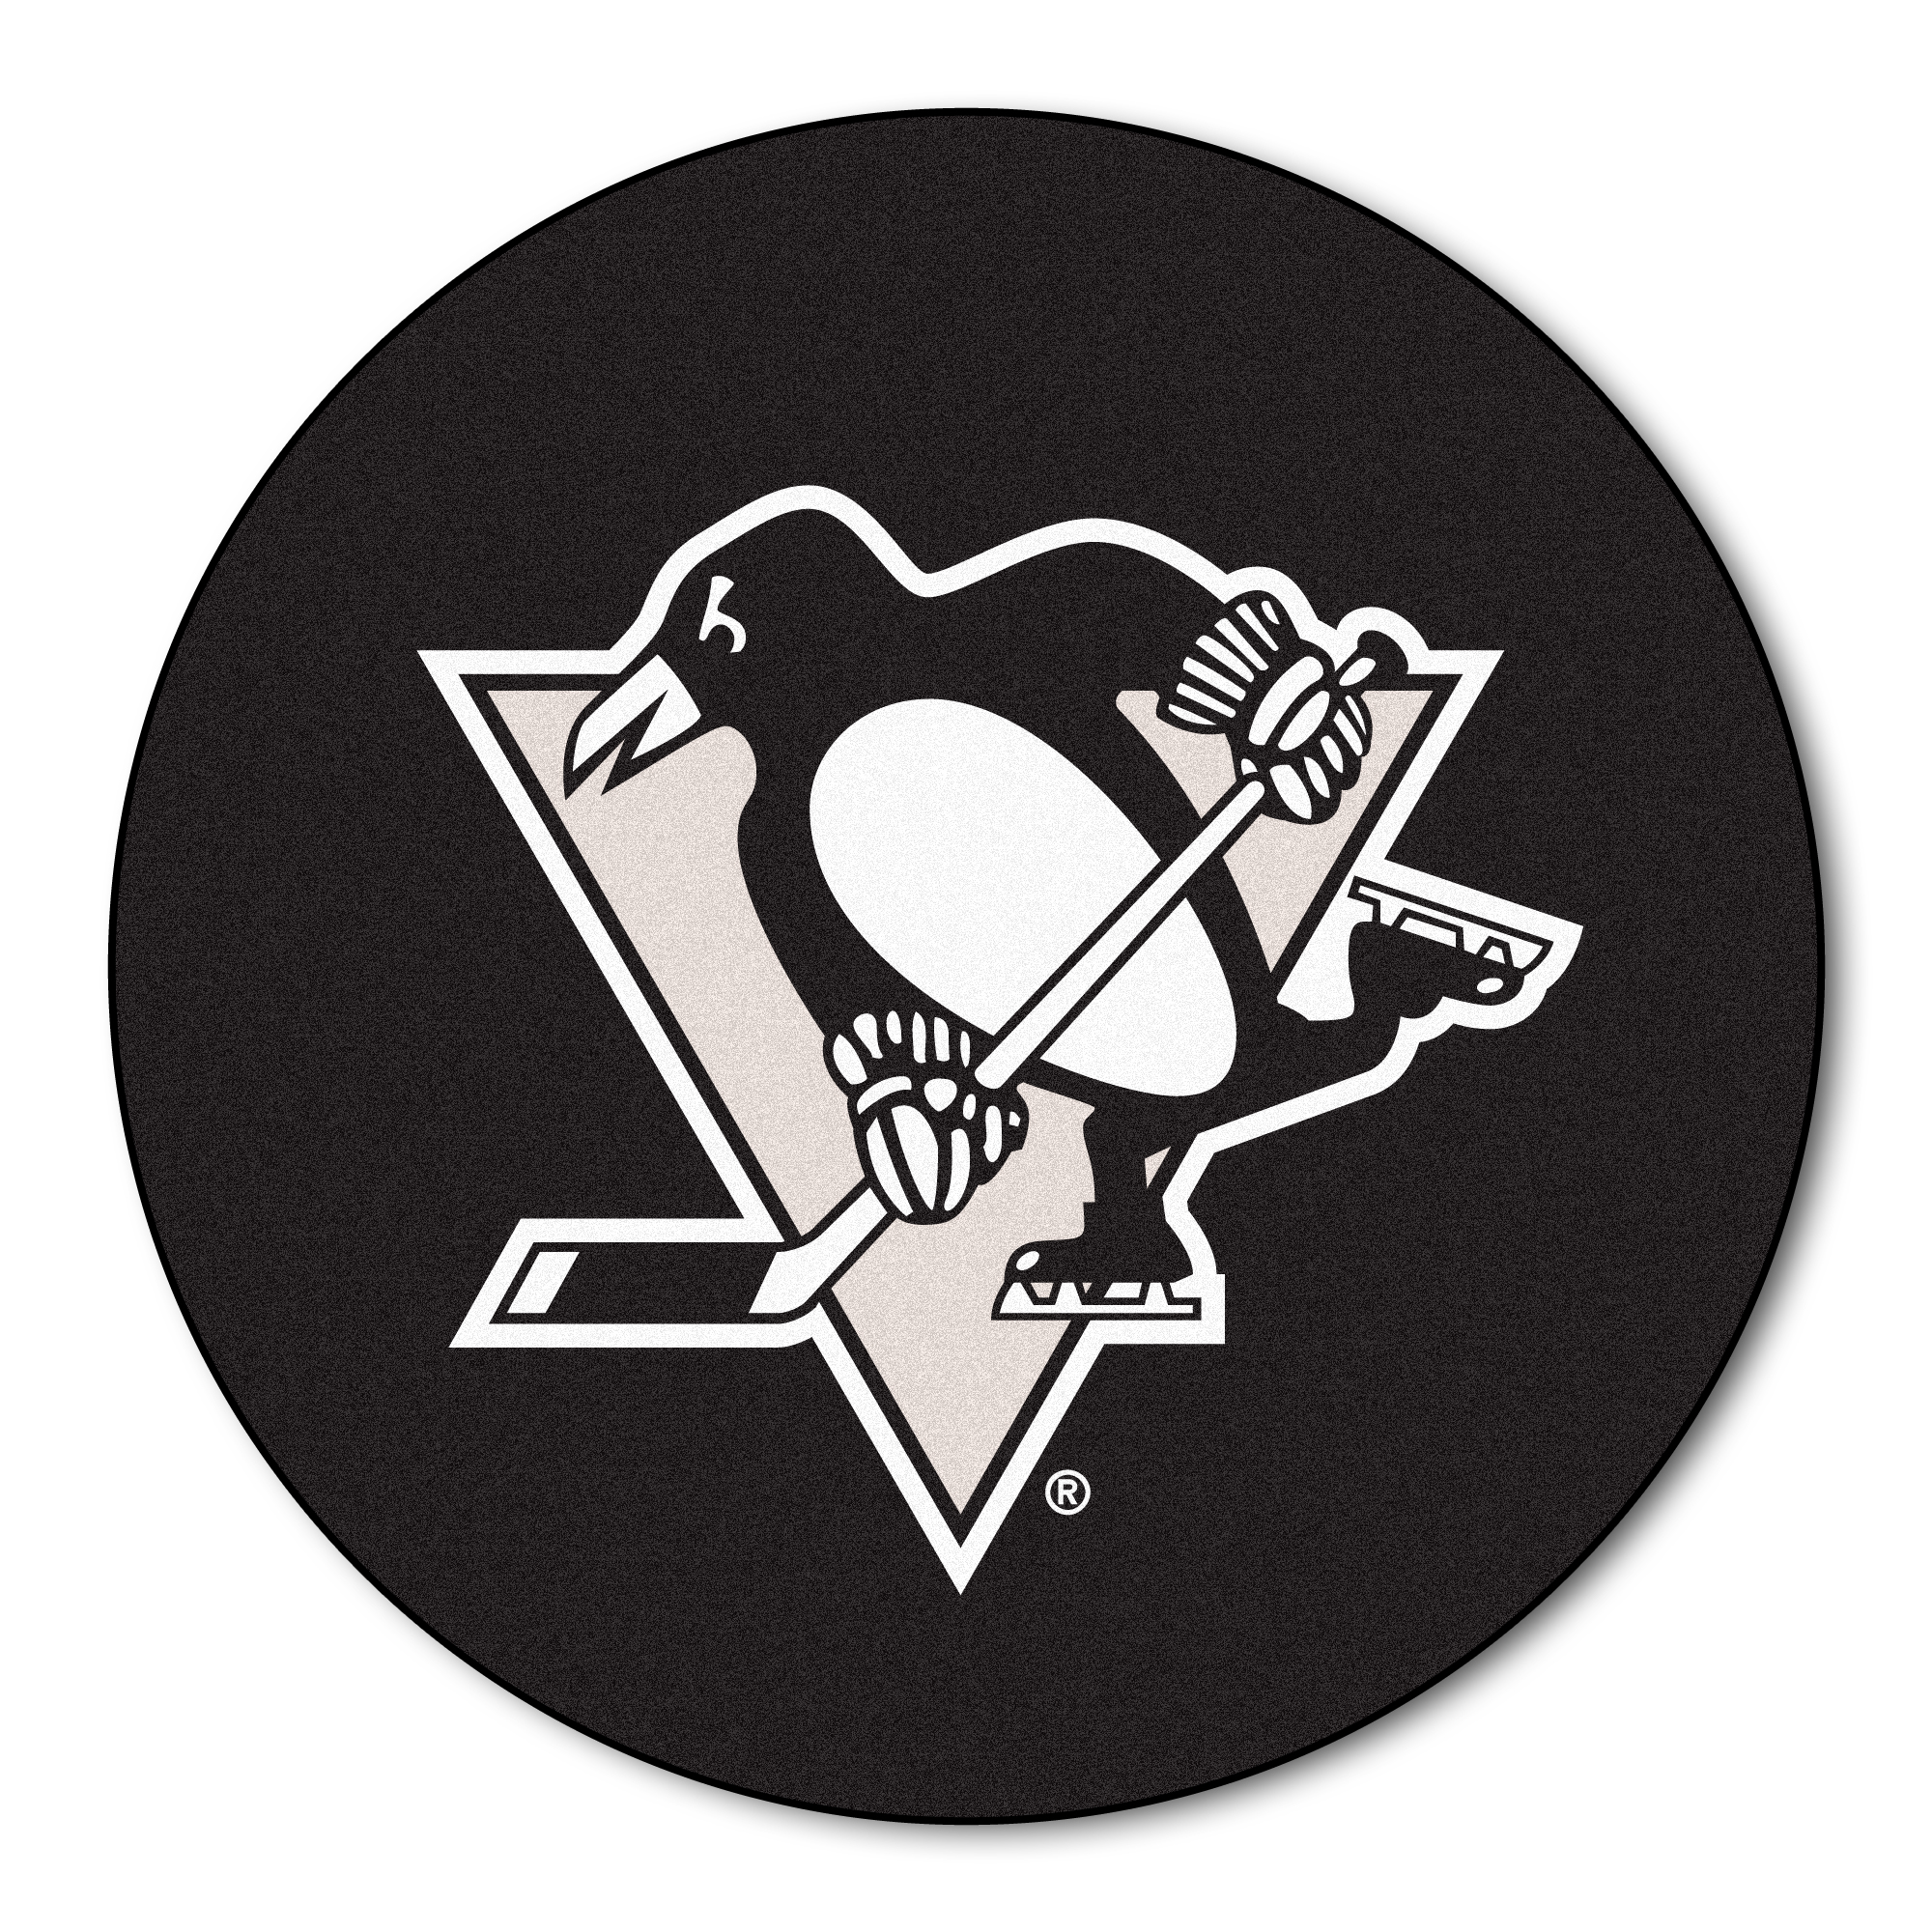 Хк питтсбург. Хоккей пингвины Питтсбург. Питтсбург Пингвинз эмблема. НХЛ Питтсбург Пингвинз. Pittsburgh Penguins логотип.